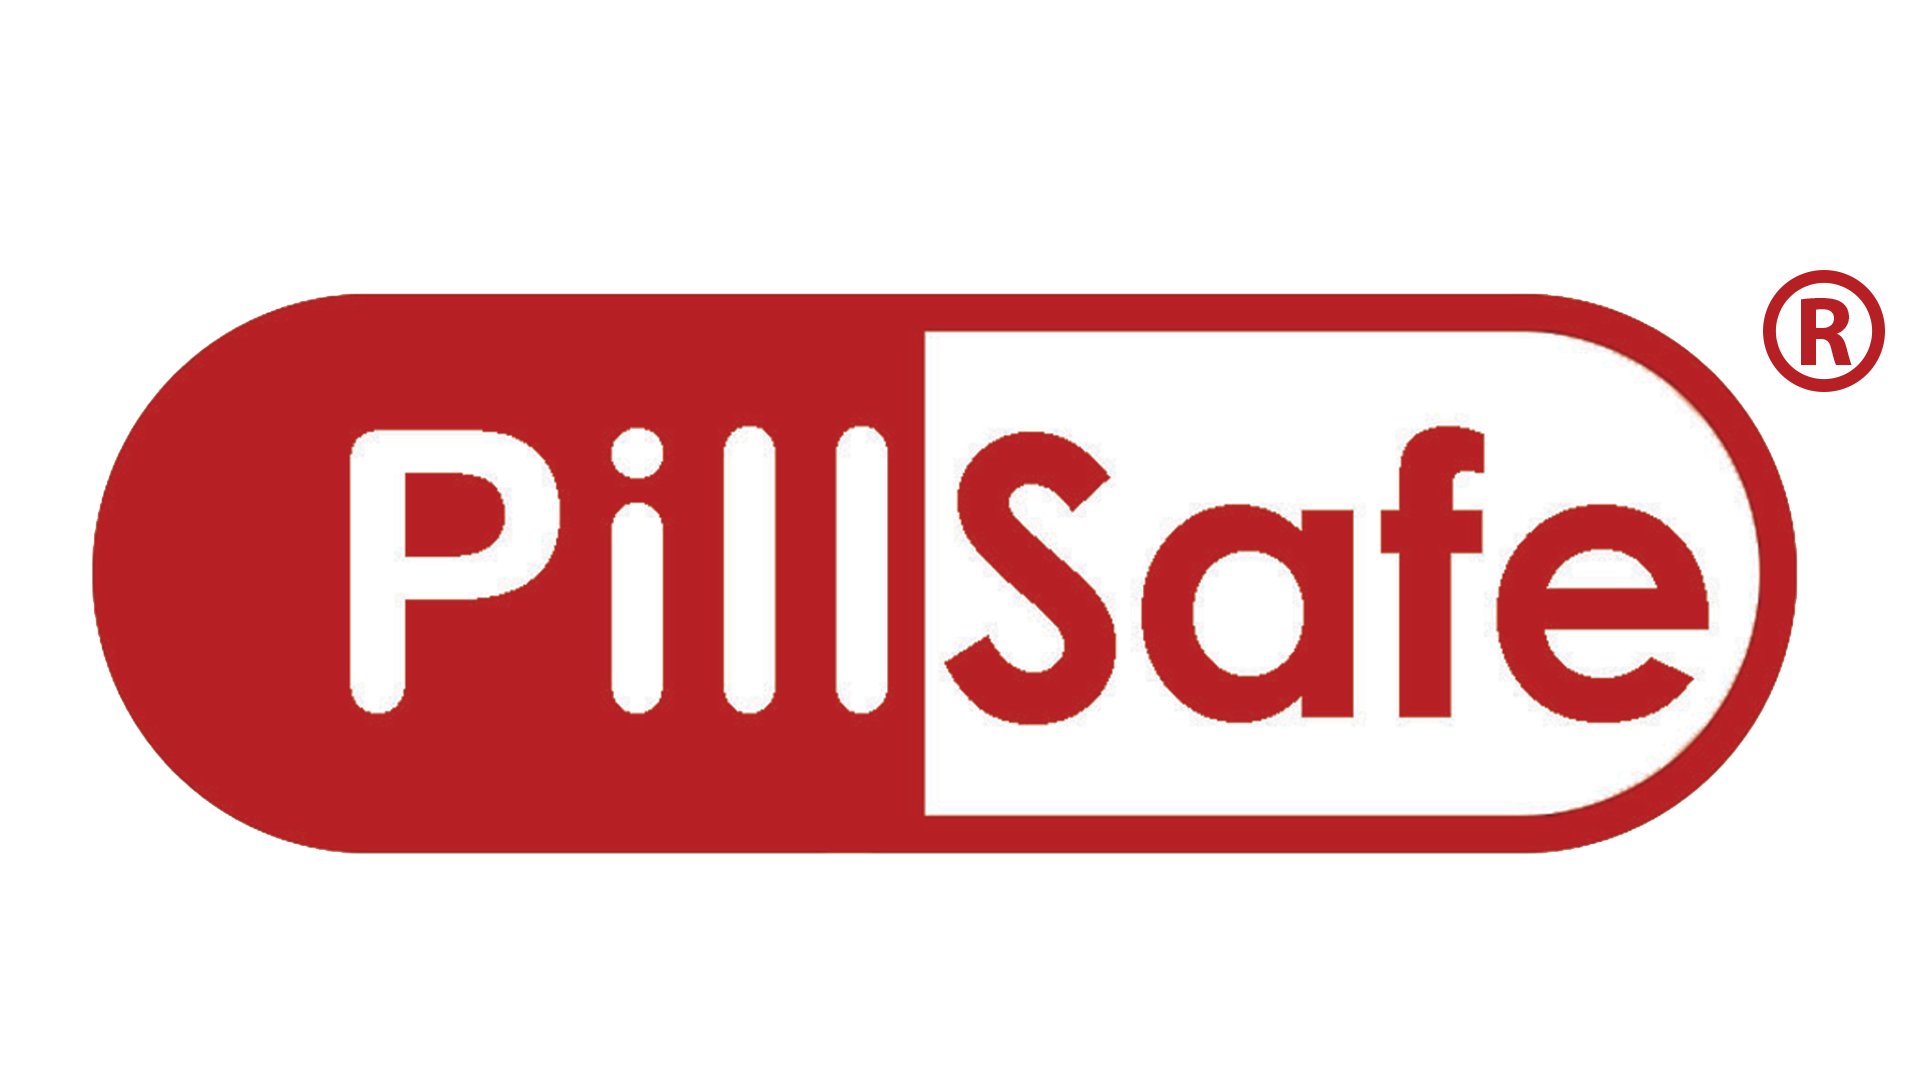 Pillsafe logo